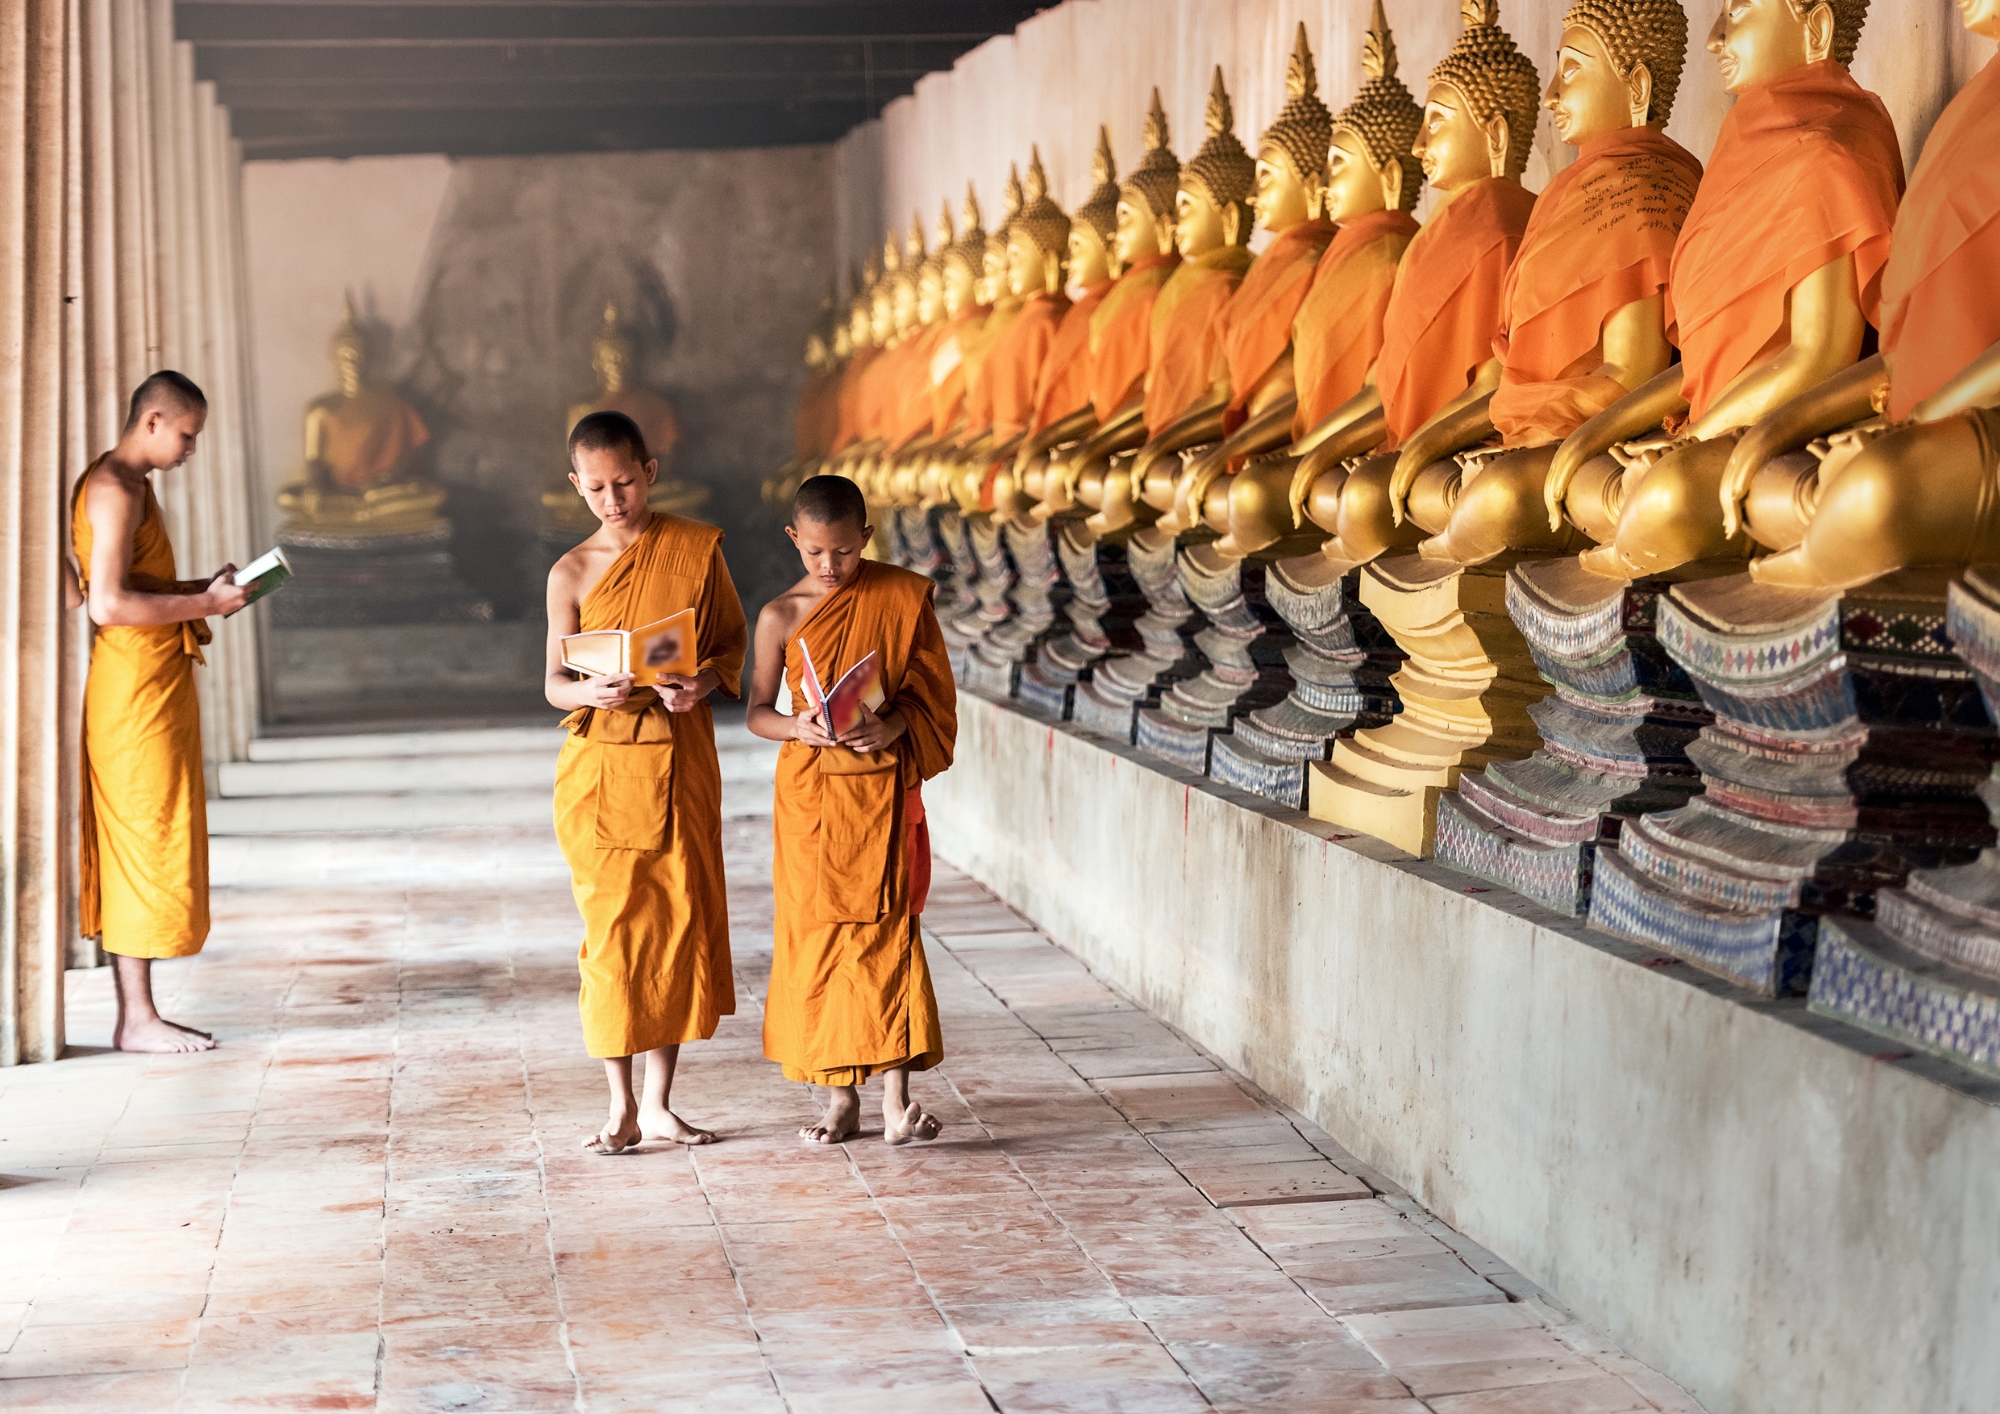 Hành trình tìm kiếm niềm an lạc theo Đạo Phật bắt đầu từ việc hiểu rõ về bản thân và cuộc sống, từ việc lắng nghe và tìm hiểu về các nguyên lý và giáo lý của Phật pháp. 